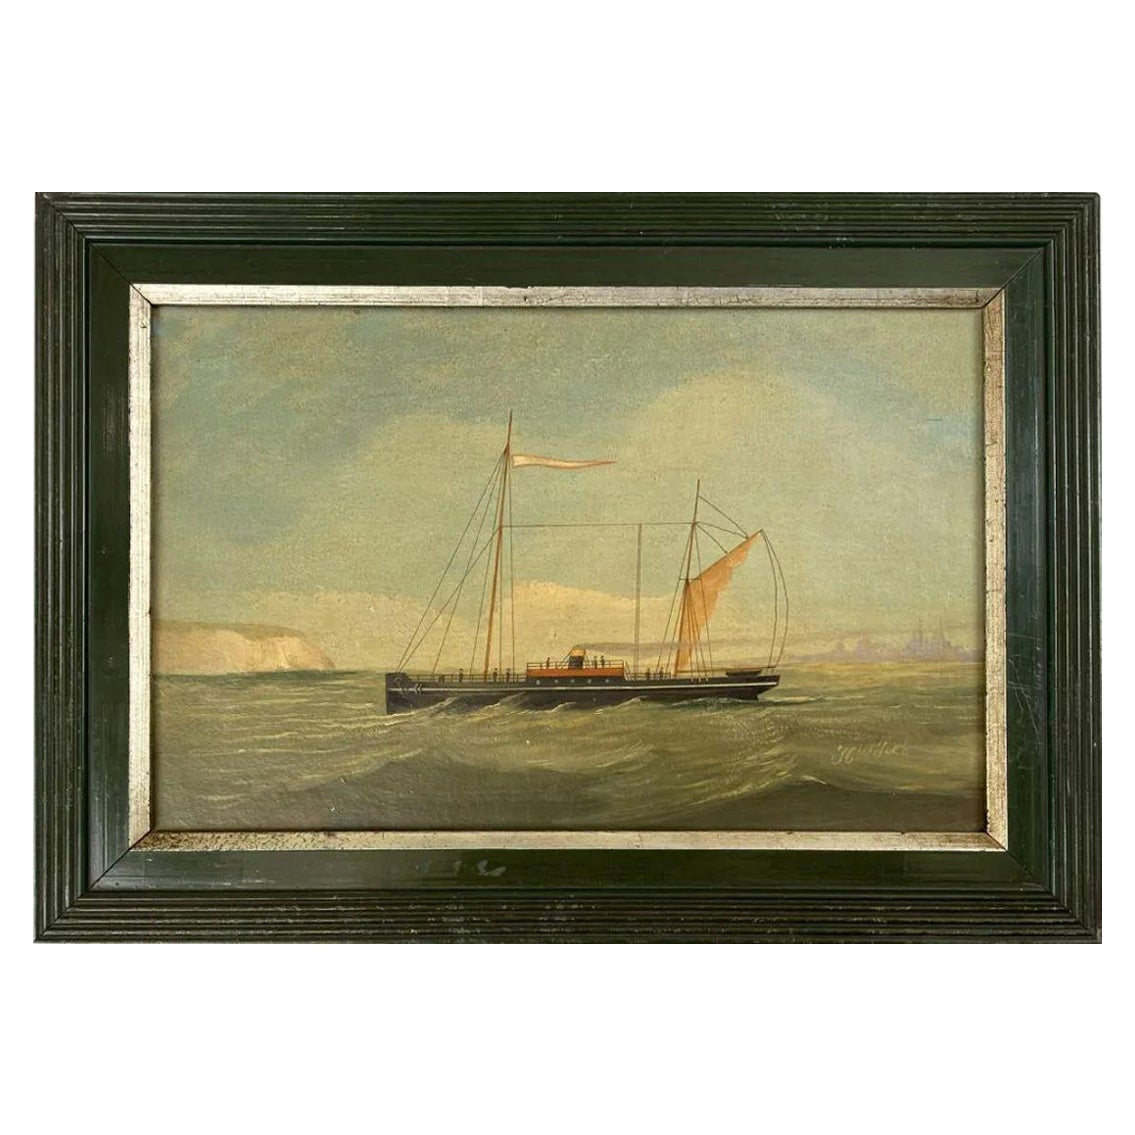 Gemälde eines Dampfschiffes aus dem 19. Jahrhundert, amerikanisch